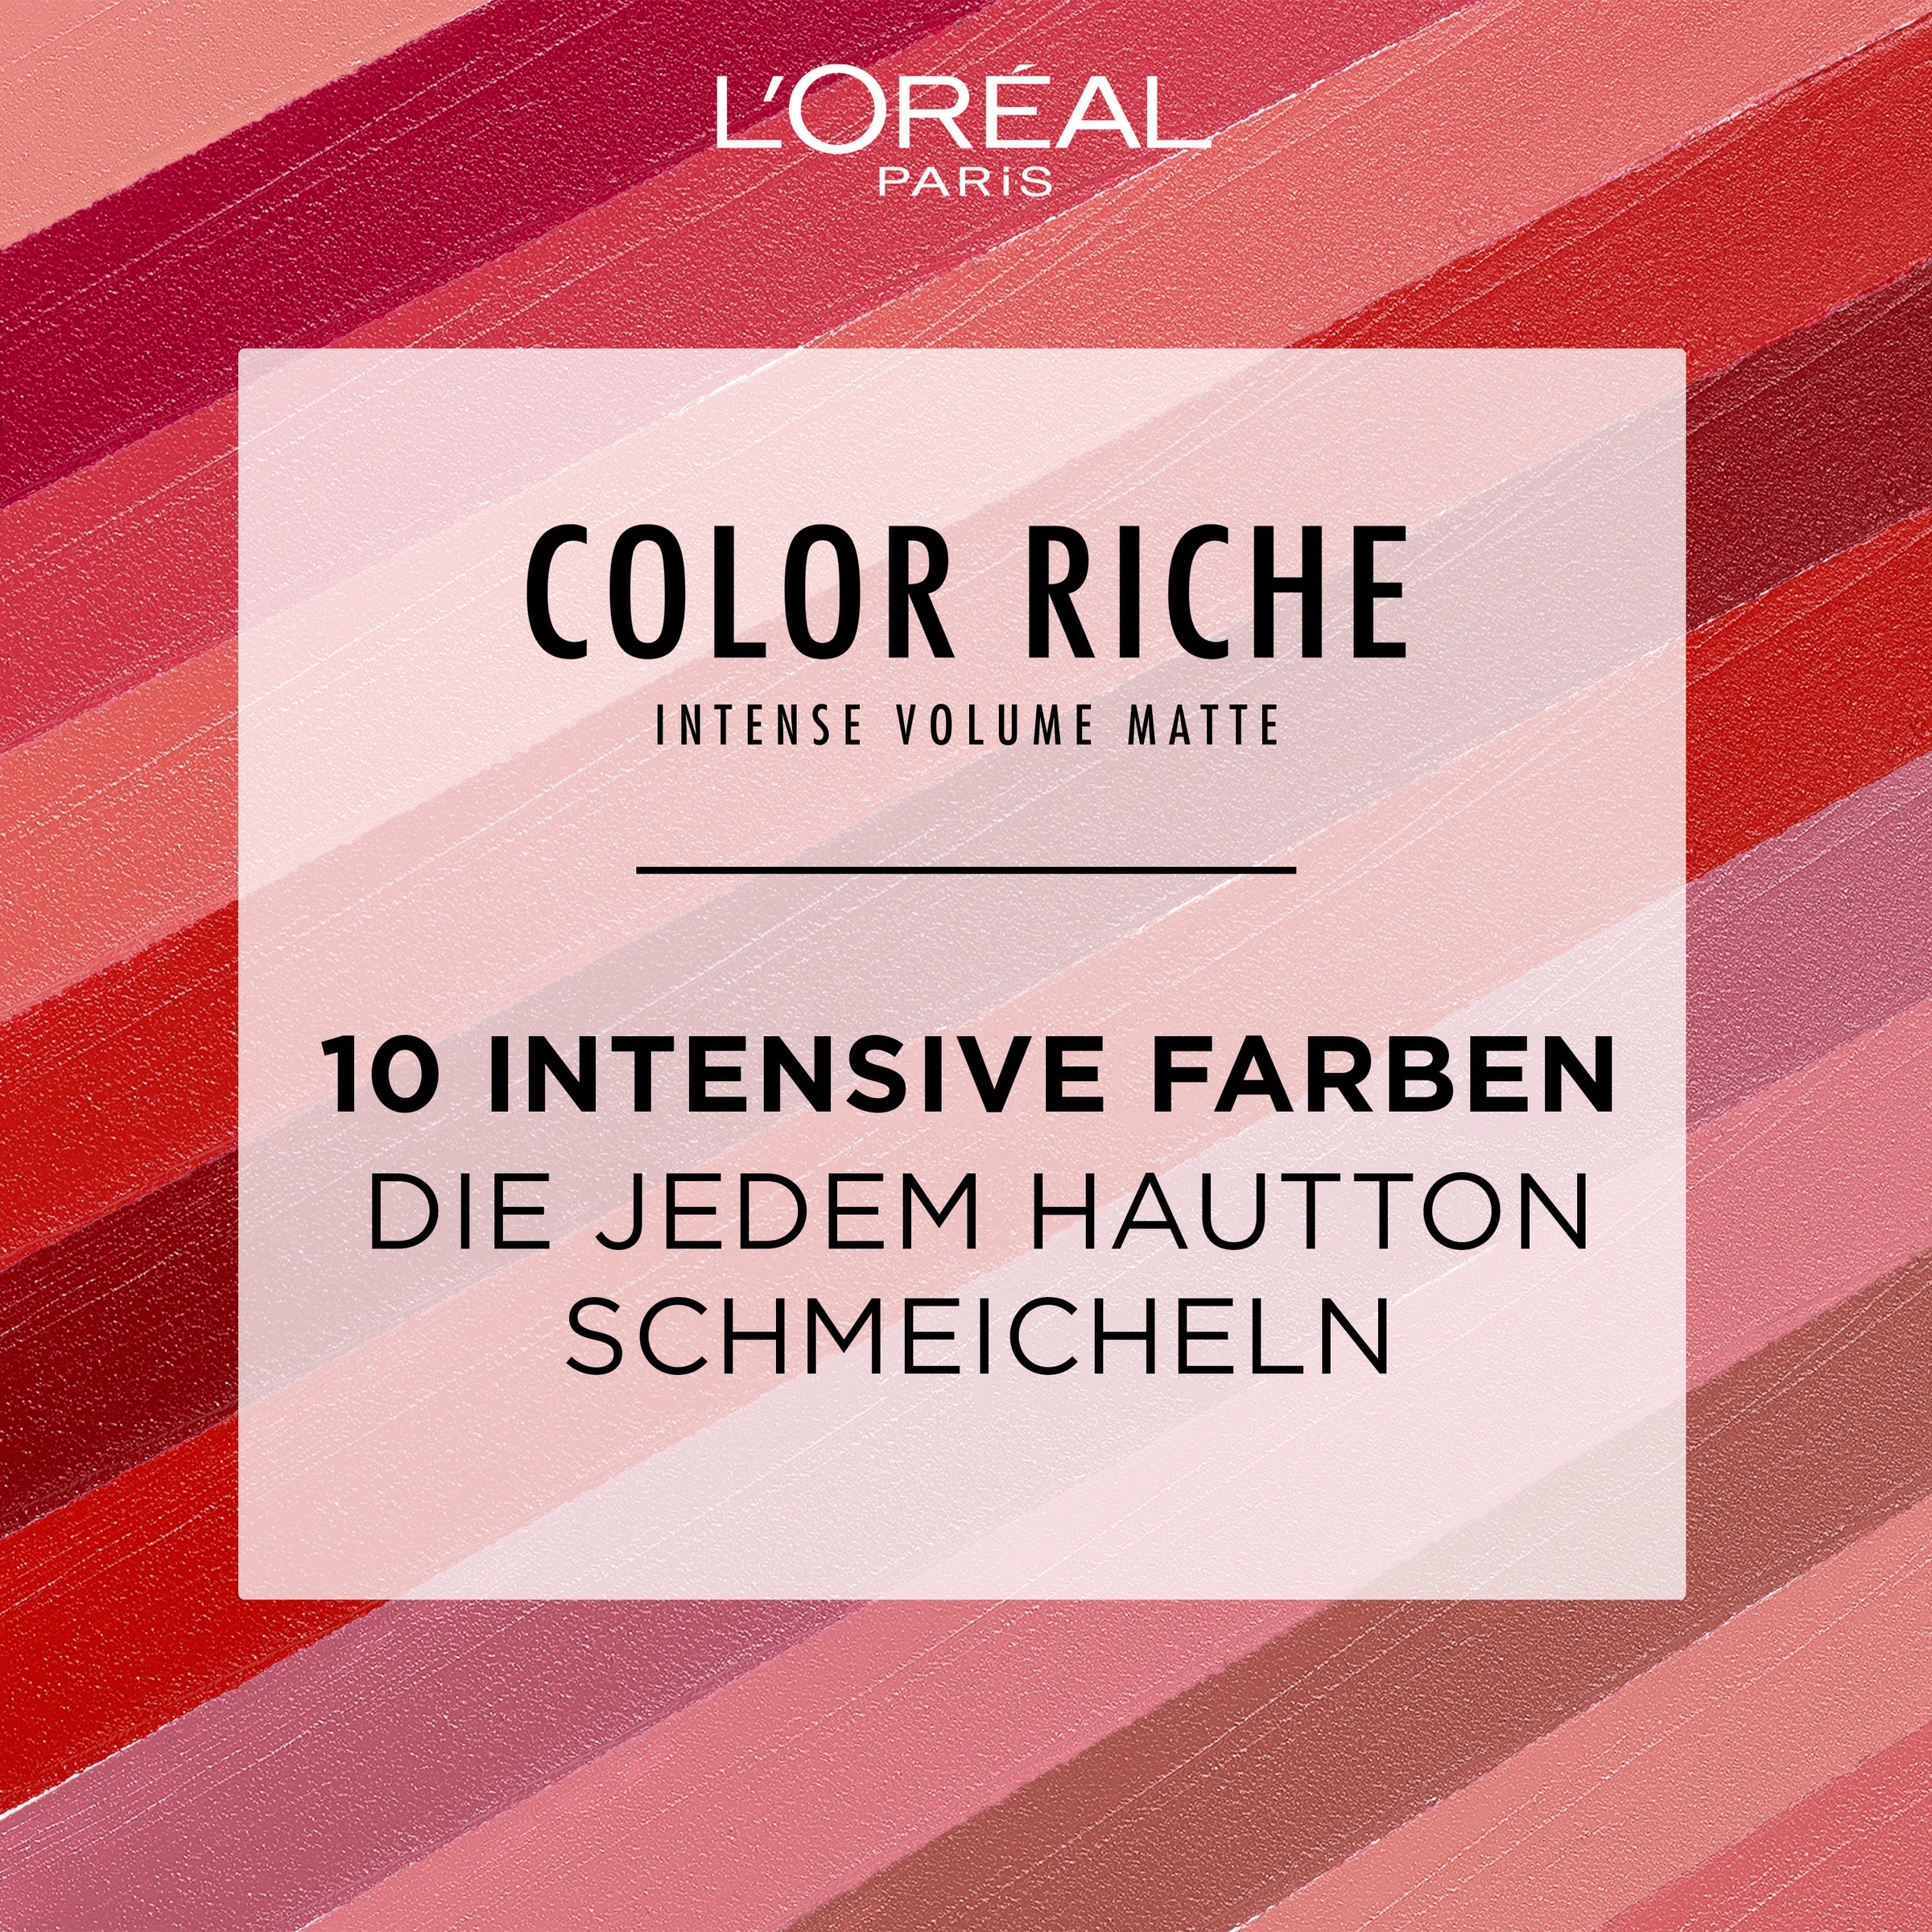 L'ORÉAL PARIS Lippenstift »Color Riche Intense Volume Matte«